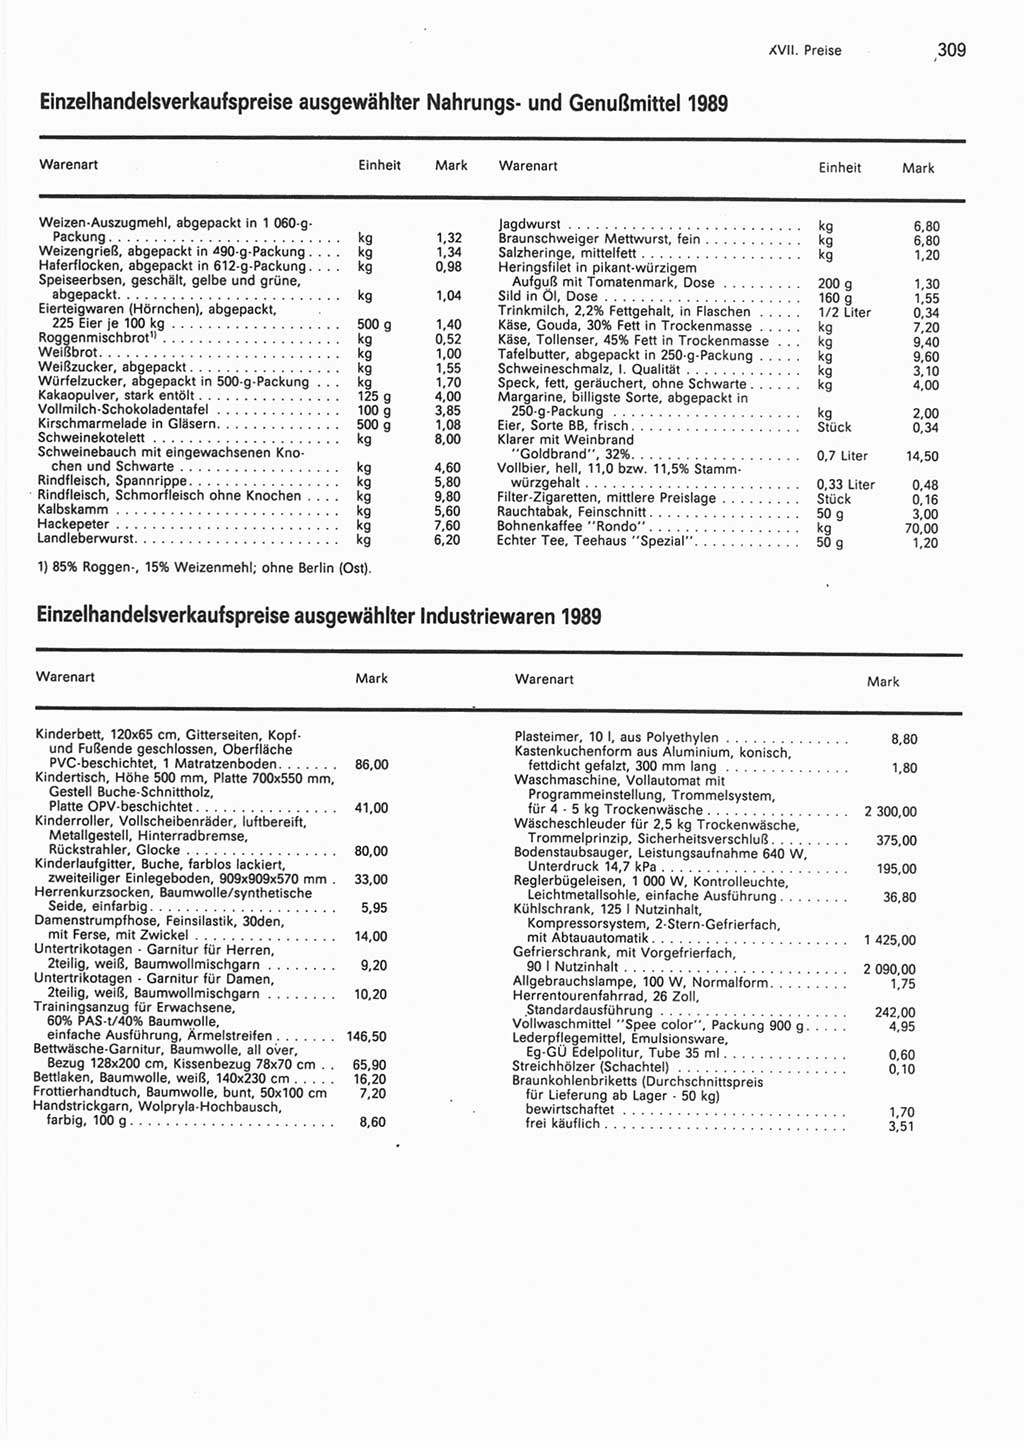 Statistisches Jahrbuch der Deutschen Demokratischen Republik (DDR) 1990, Seite 309 (Stat. Jb. DDR 1990, S. 309)